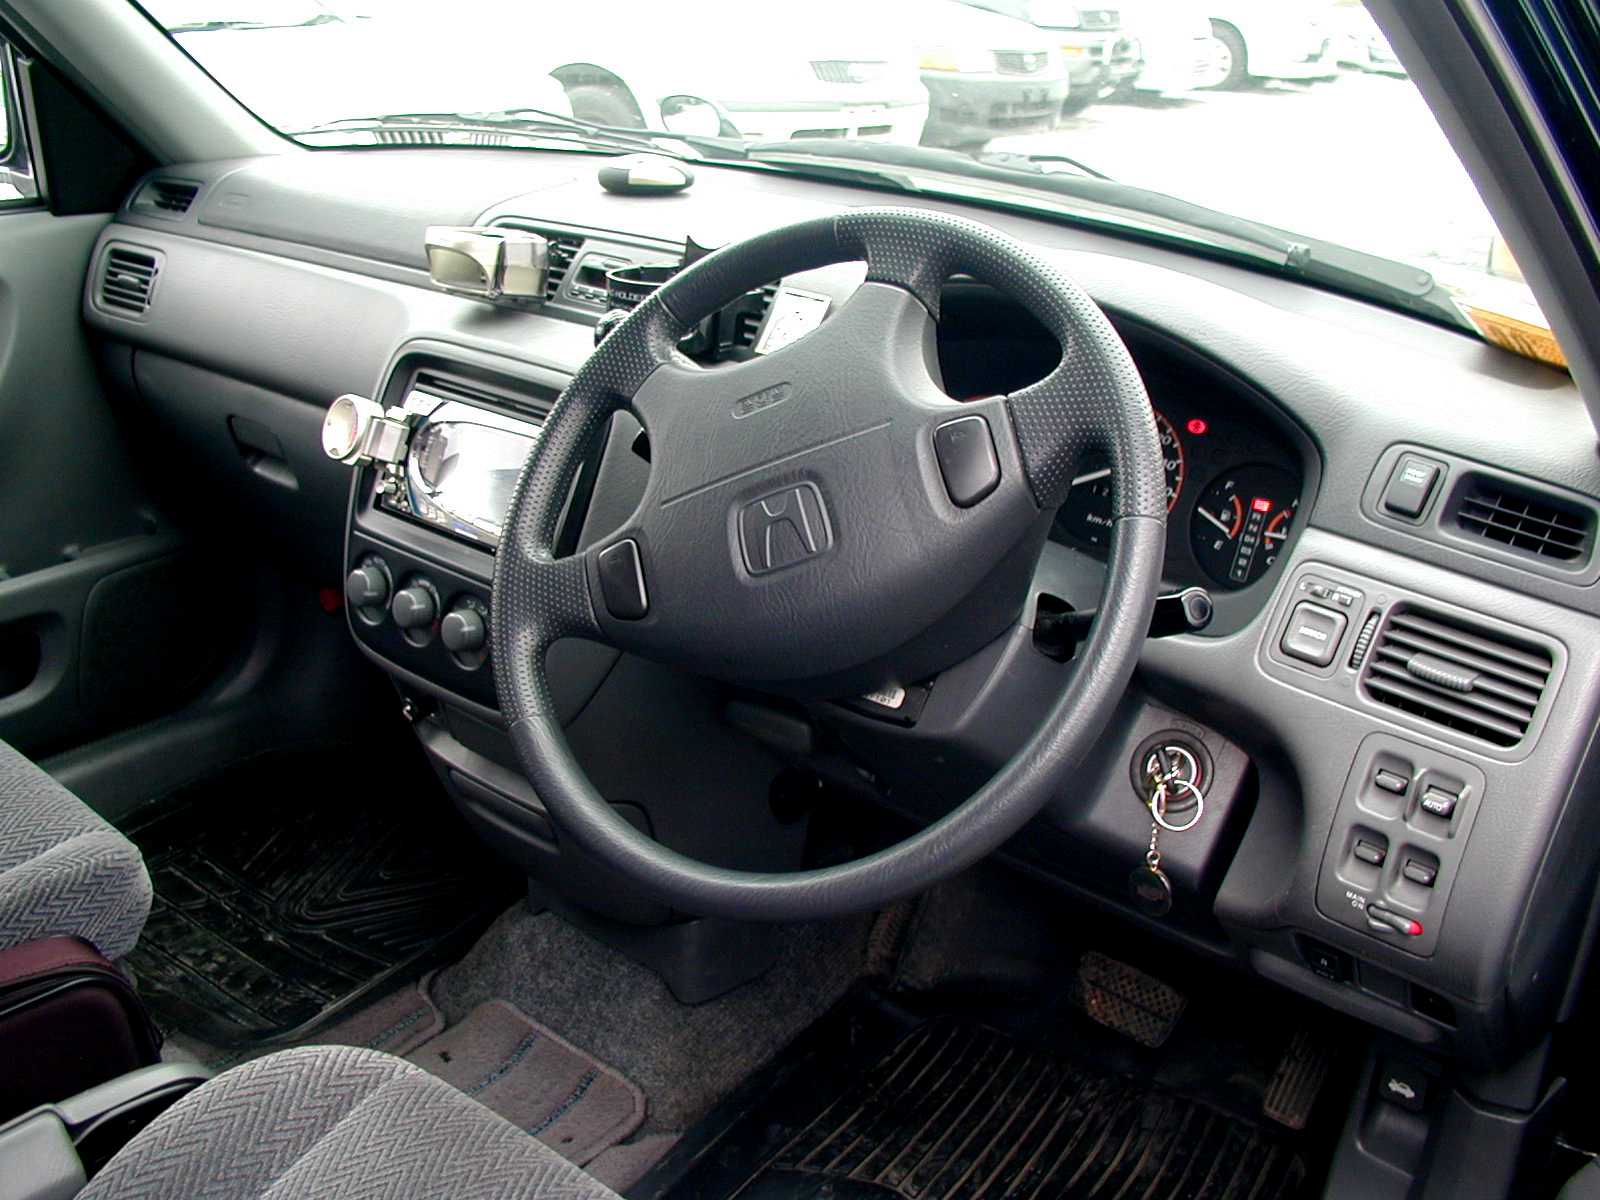 Правый руль рф. Правый руль. Правый руль и левый руль. Автомобиль с левым и правым рулем. Subaru леворукая 2003 года леворукая.